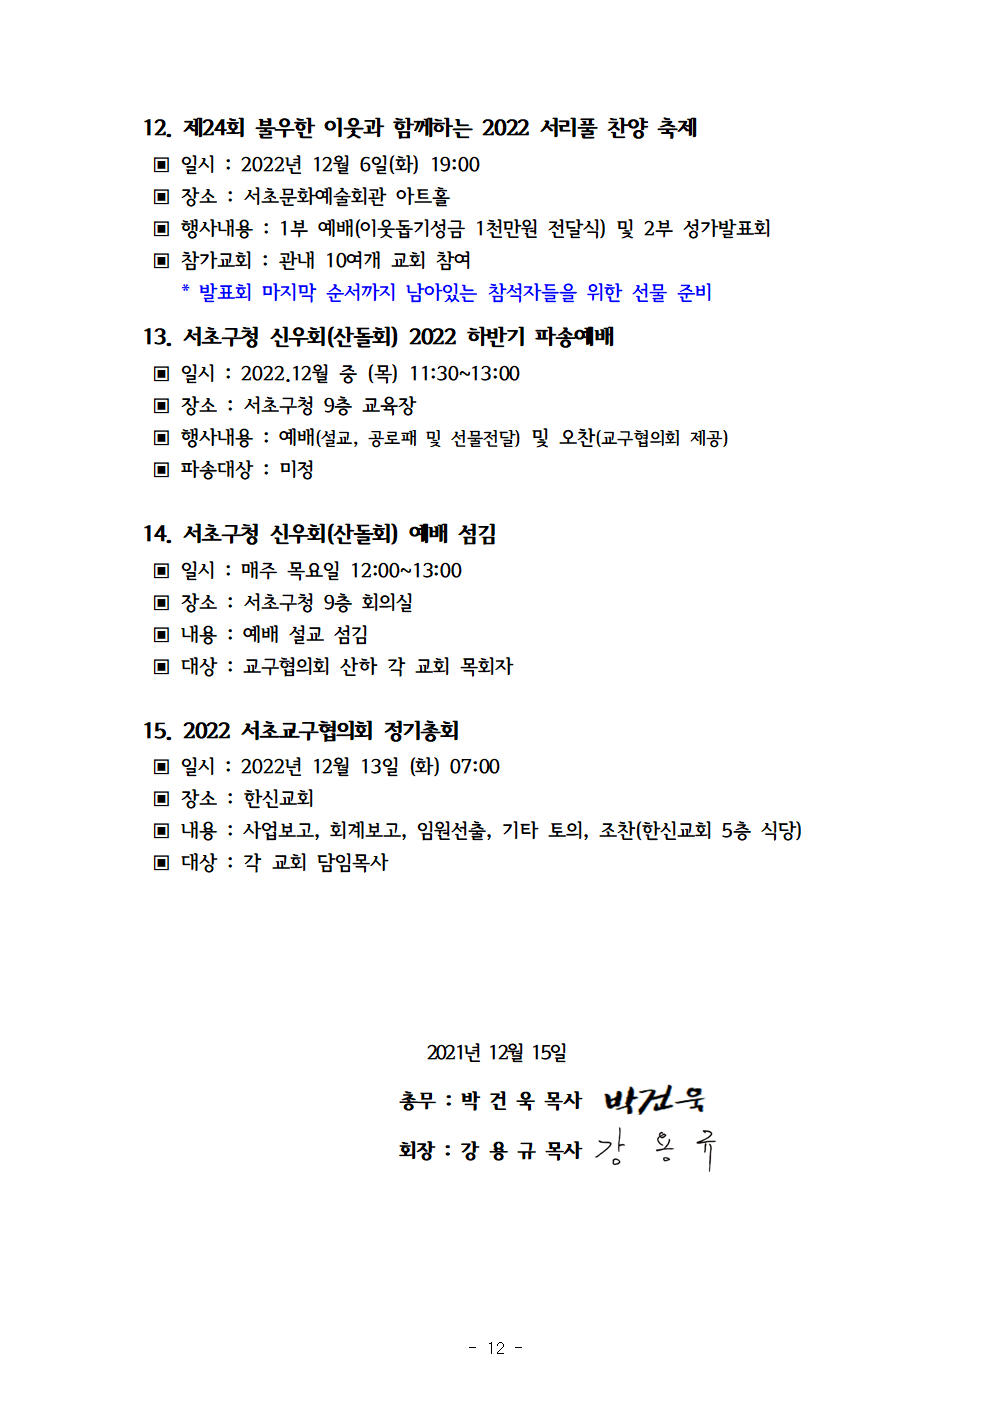 2021회기 서초교구협의회 정기총회자료(12.17)_홈피용013.png